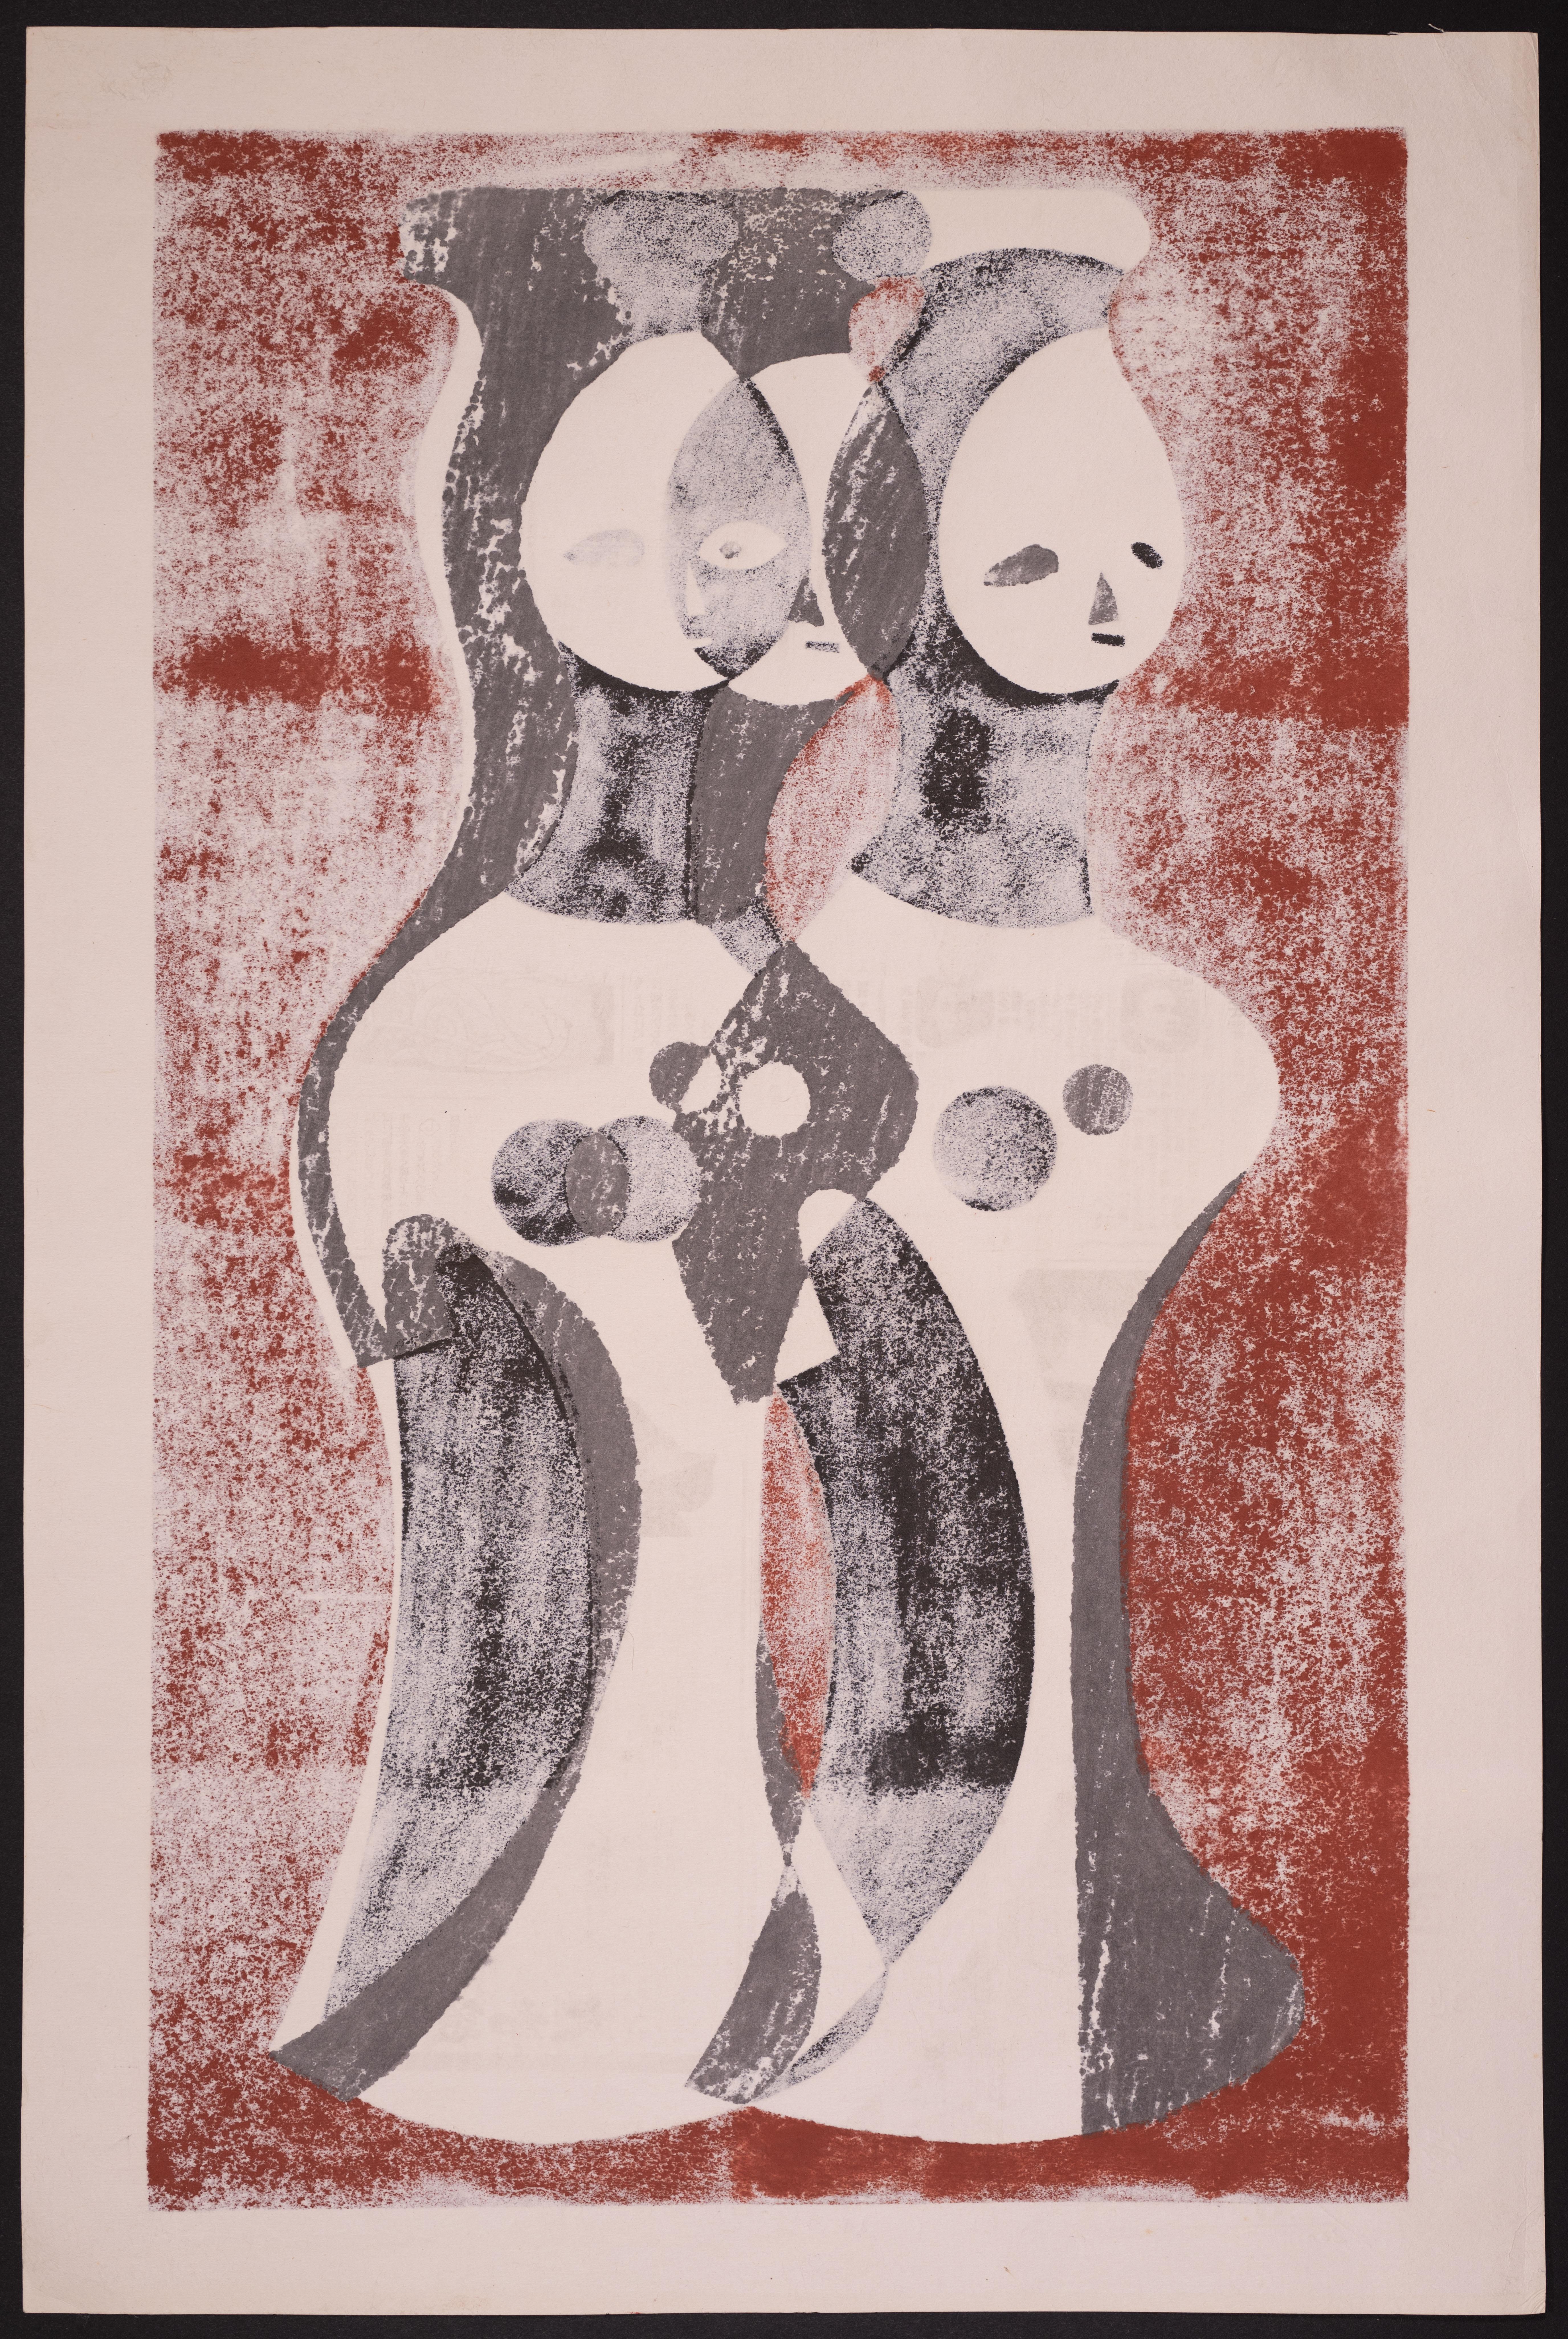 Pressed Kiyoshi Saito Japanese Woodblock Print Clay Image, 1952